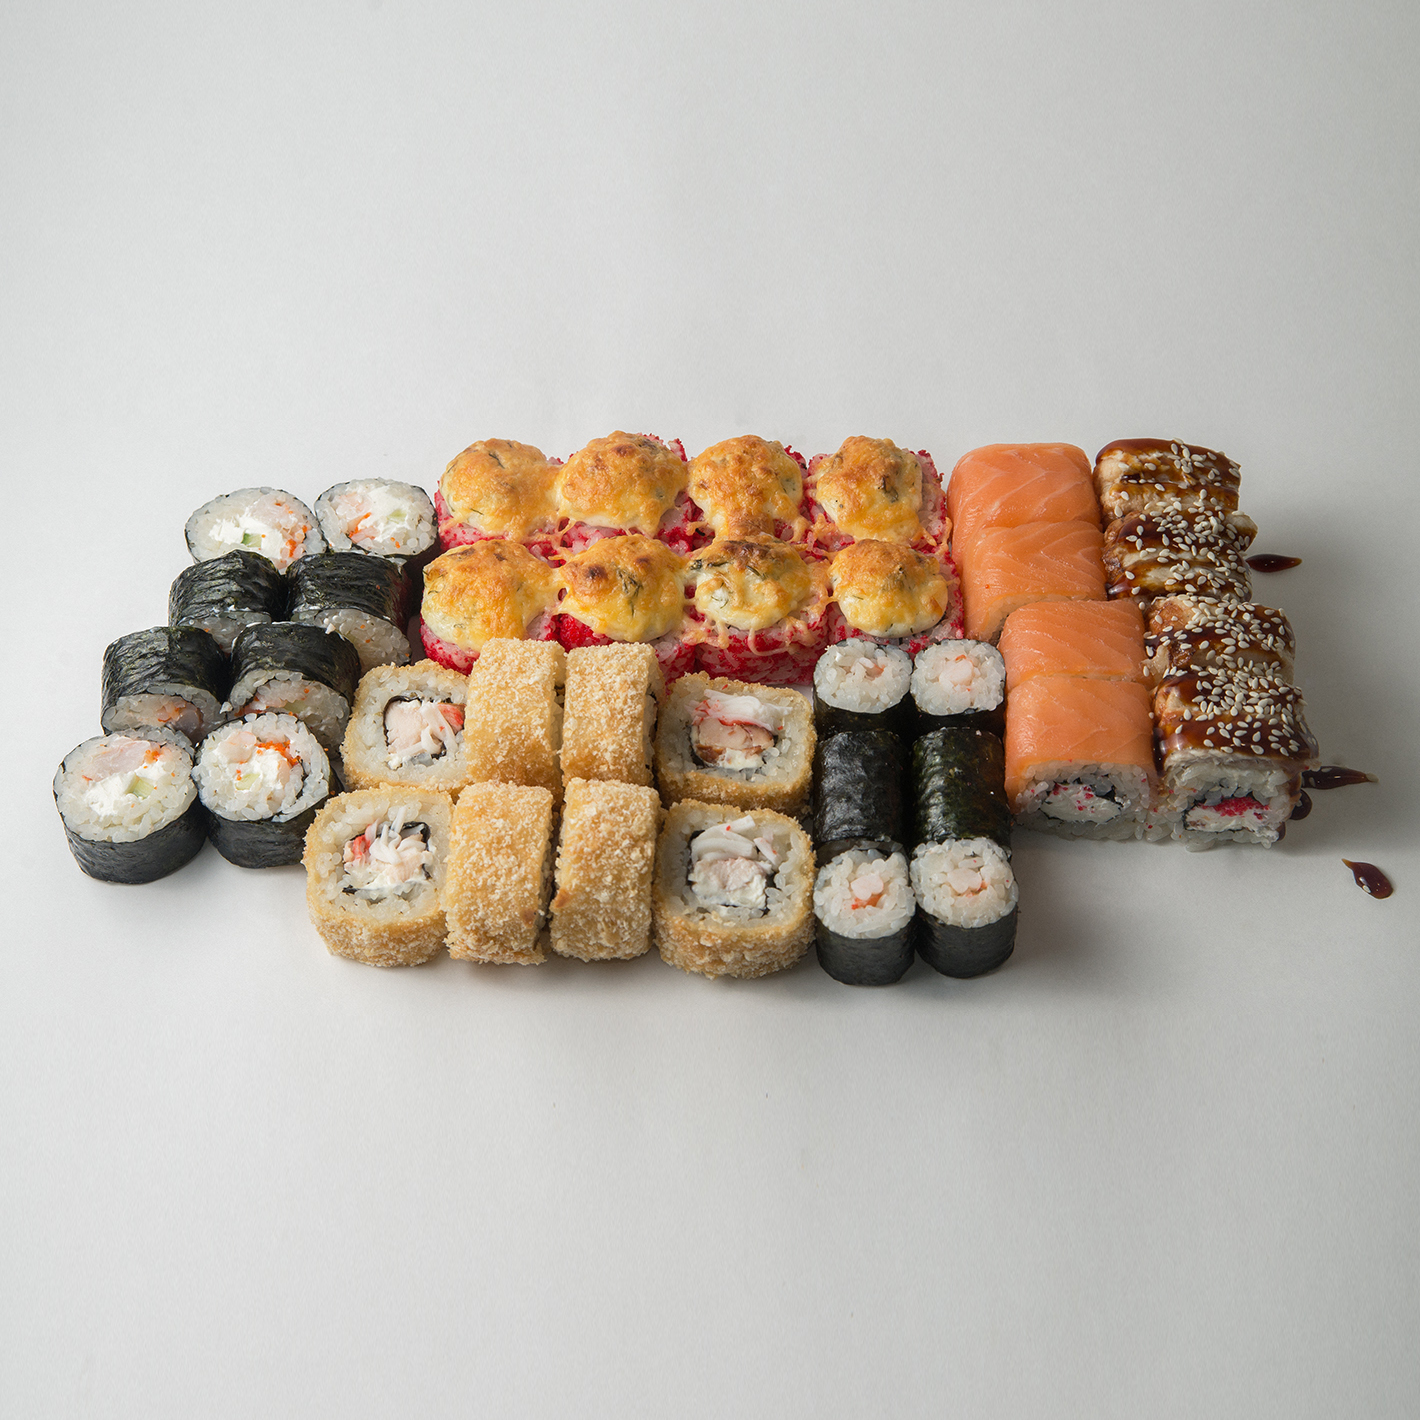 Фуджи суши в самаре с доставкой бесплатно заказать фото 114